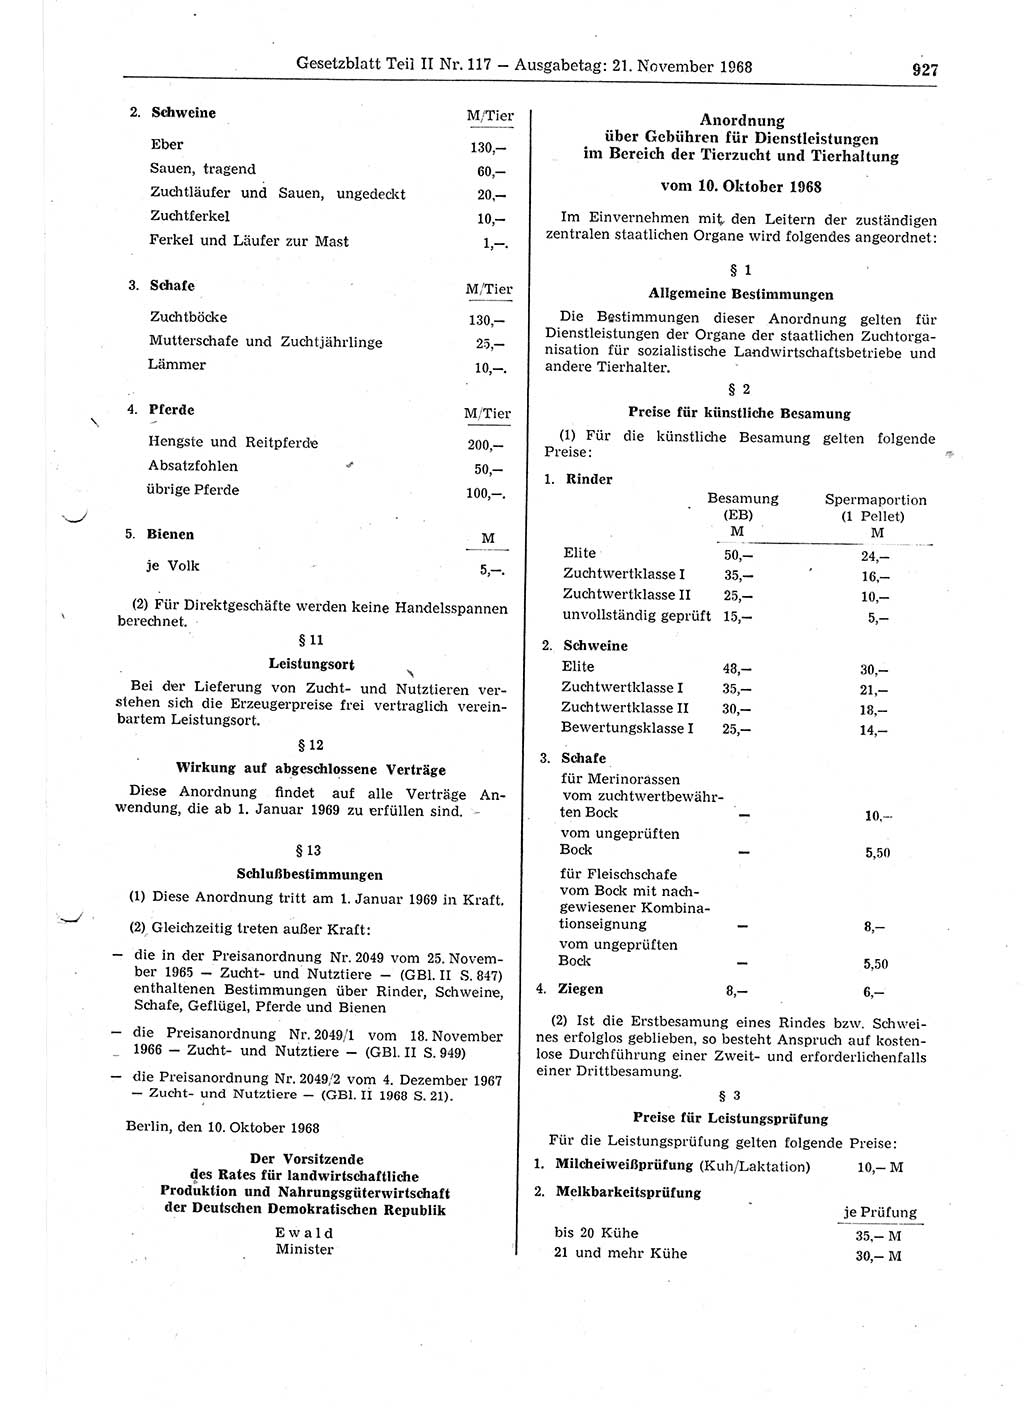 Gesetzblatt (GBl.) der Deutschen Demokratischen Republik (DDR) Teil ⅠⅠ 1968, Seite 927 (GBl. DDR ⅠⅠ 1968, S. 927)